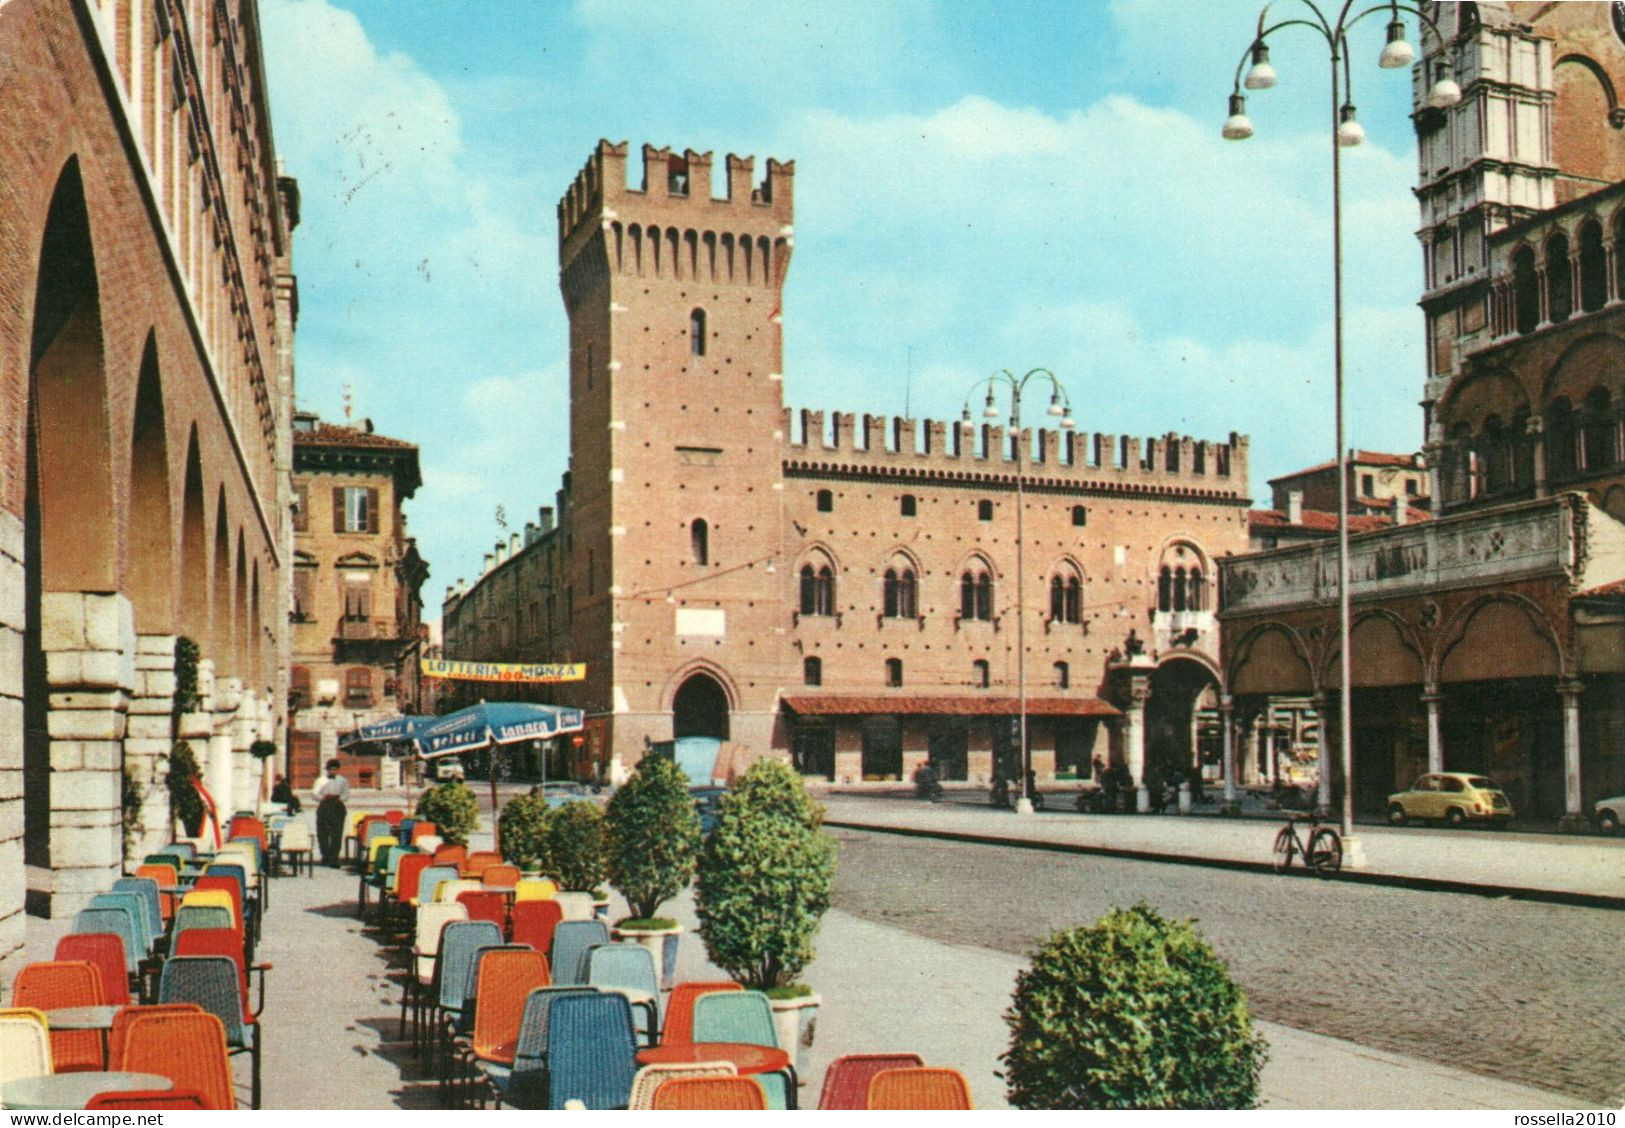 CARTOLINA 1971 ITALIA FERRARA PIAZZA TRENTO TRIESTE PAL. MUNICIPIO Italy Postcard ITALIEN Ansichtskarten - Ferrara